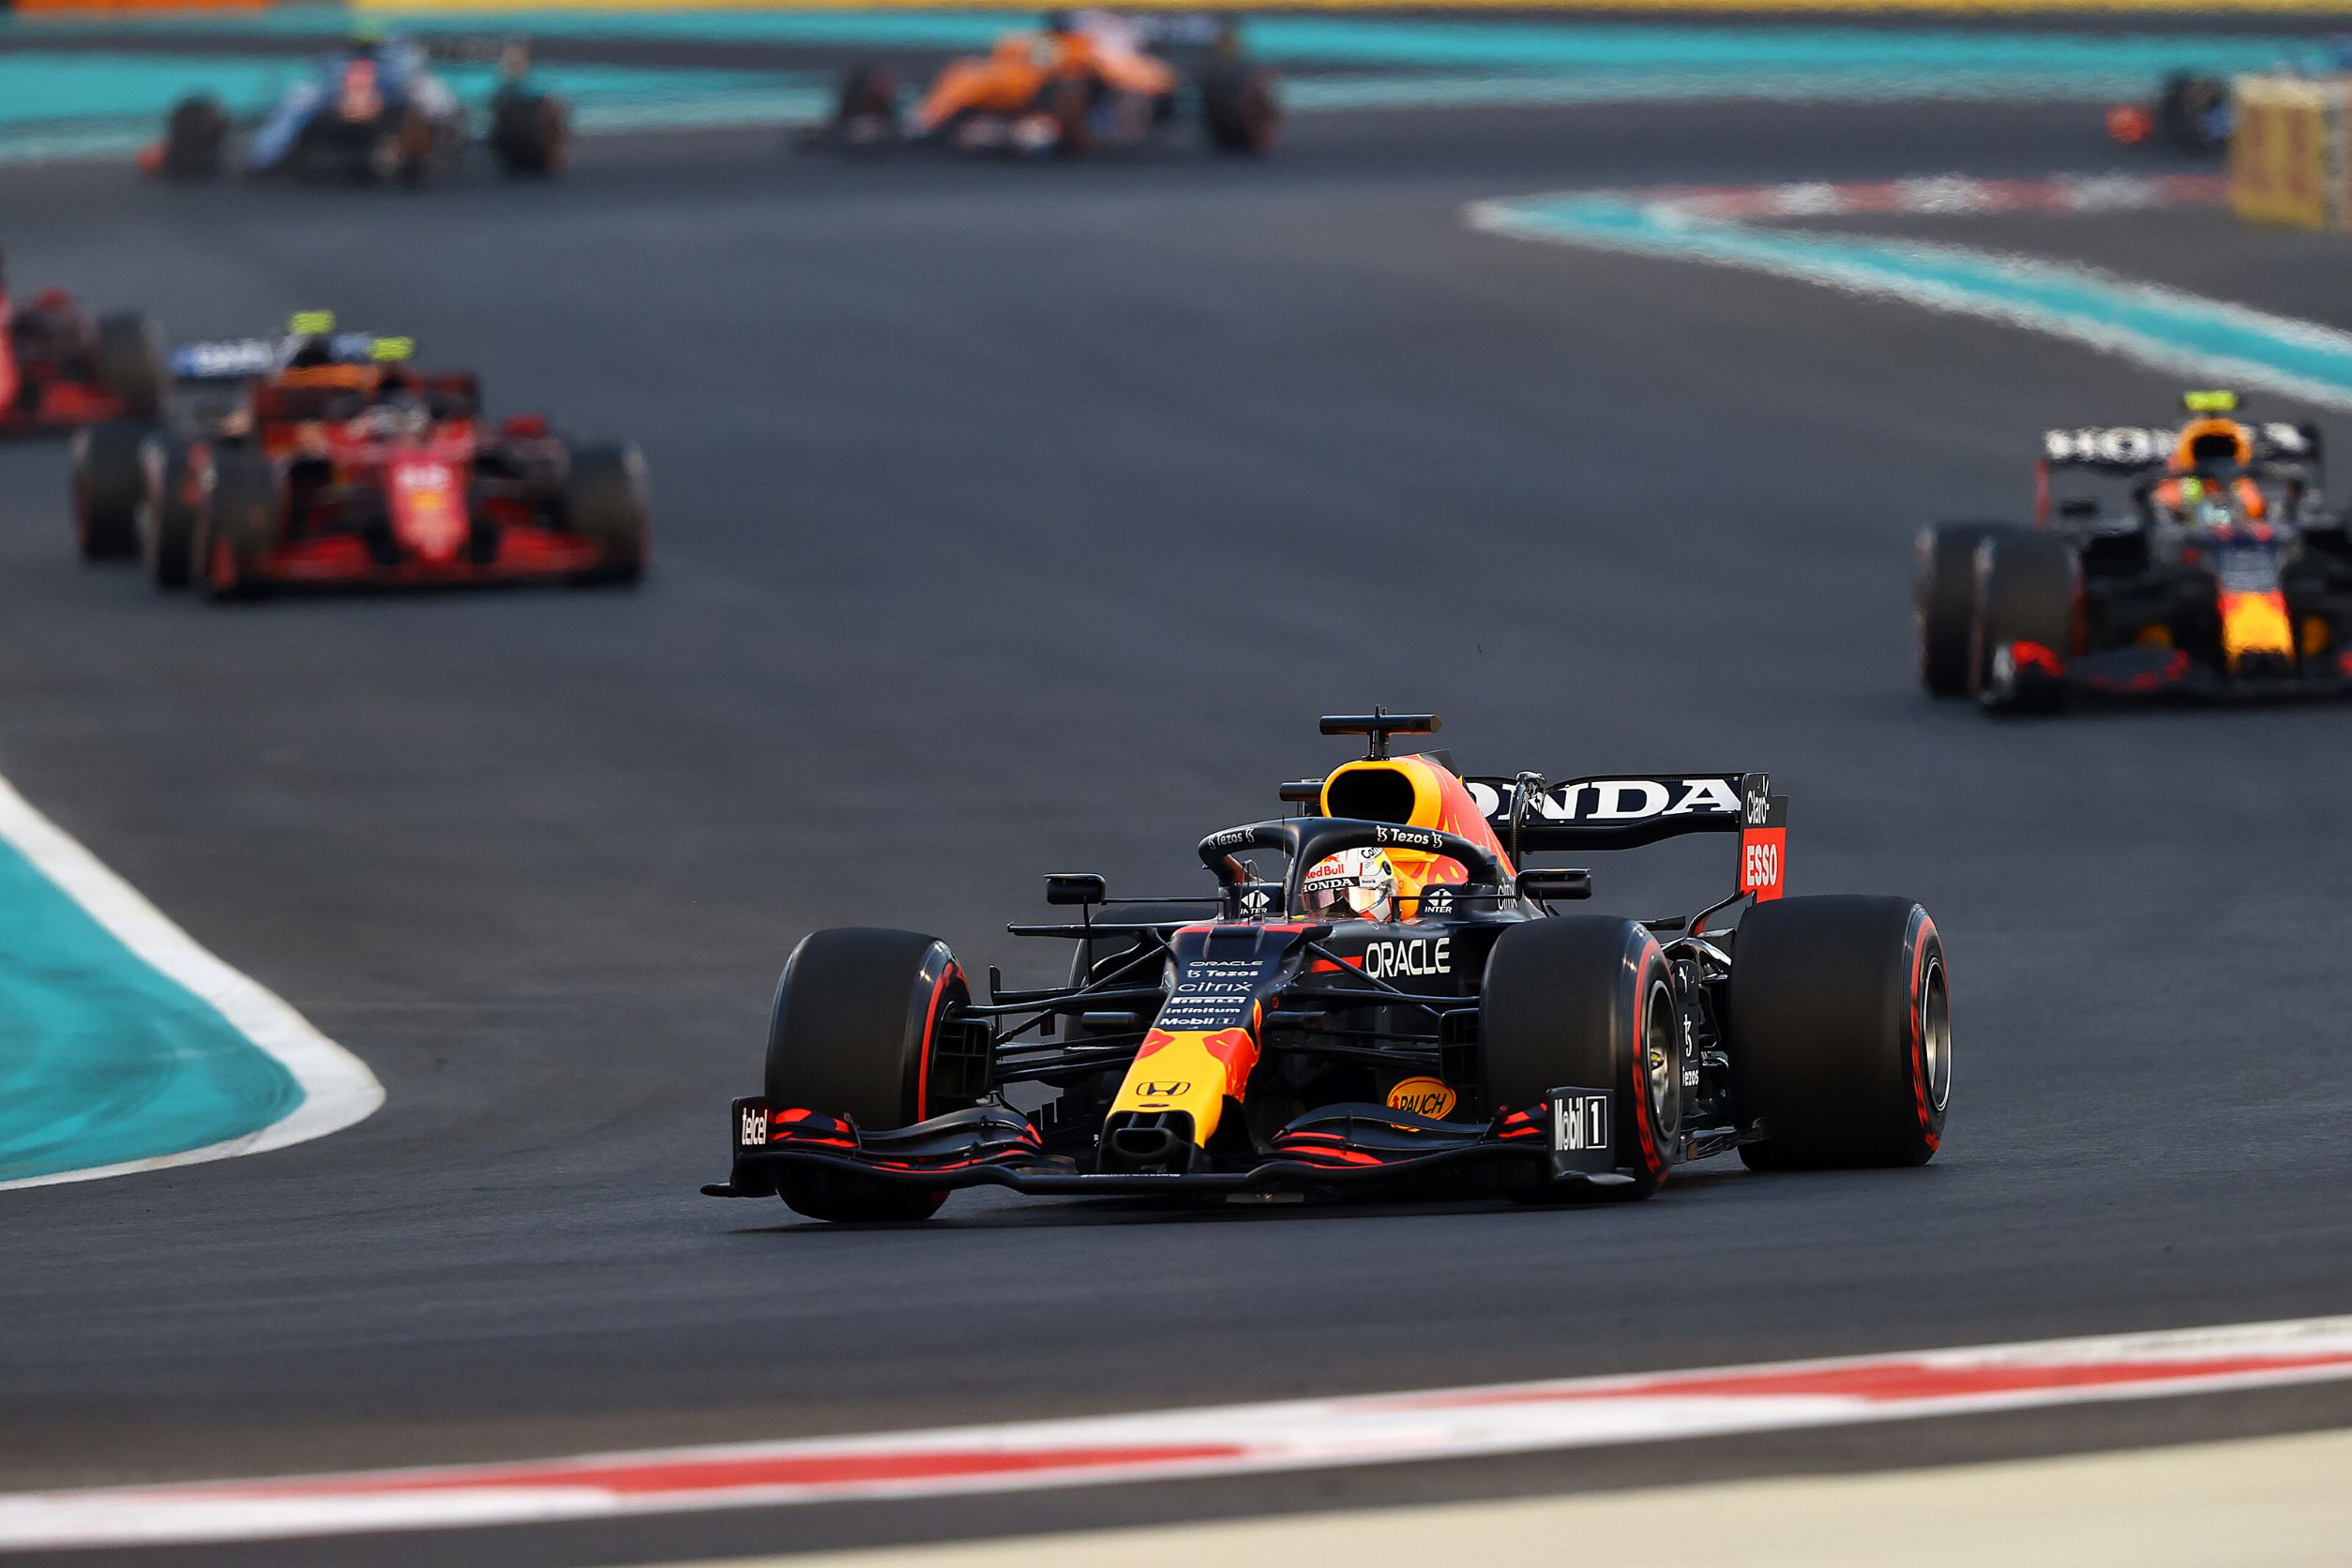 F1 Abu Dhabi 2021